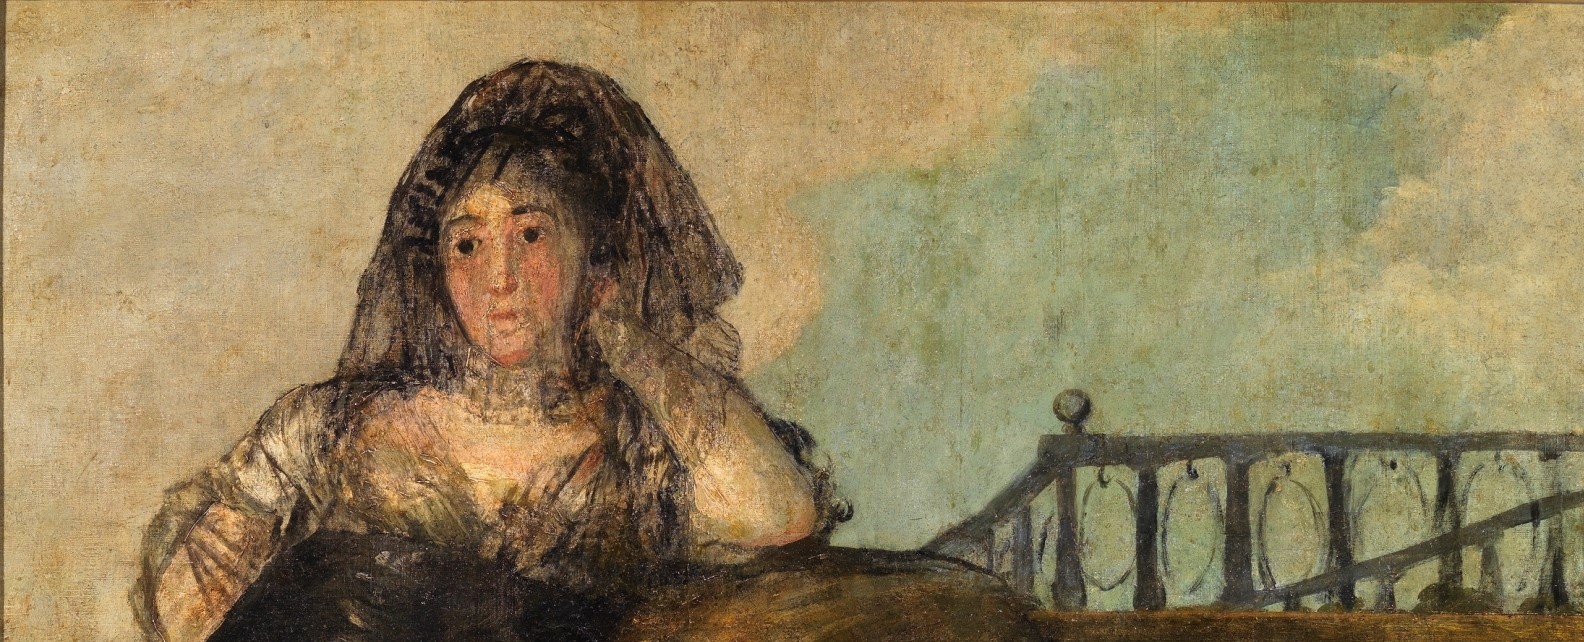 Una Manola: Leocadia Zorrilla de Francisco de Goya y Lucientes (Museo del Prado) 1820-1823